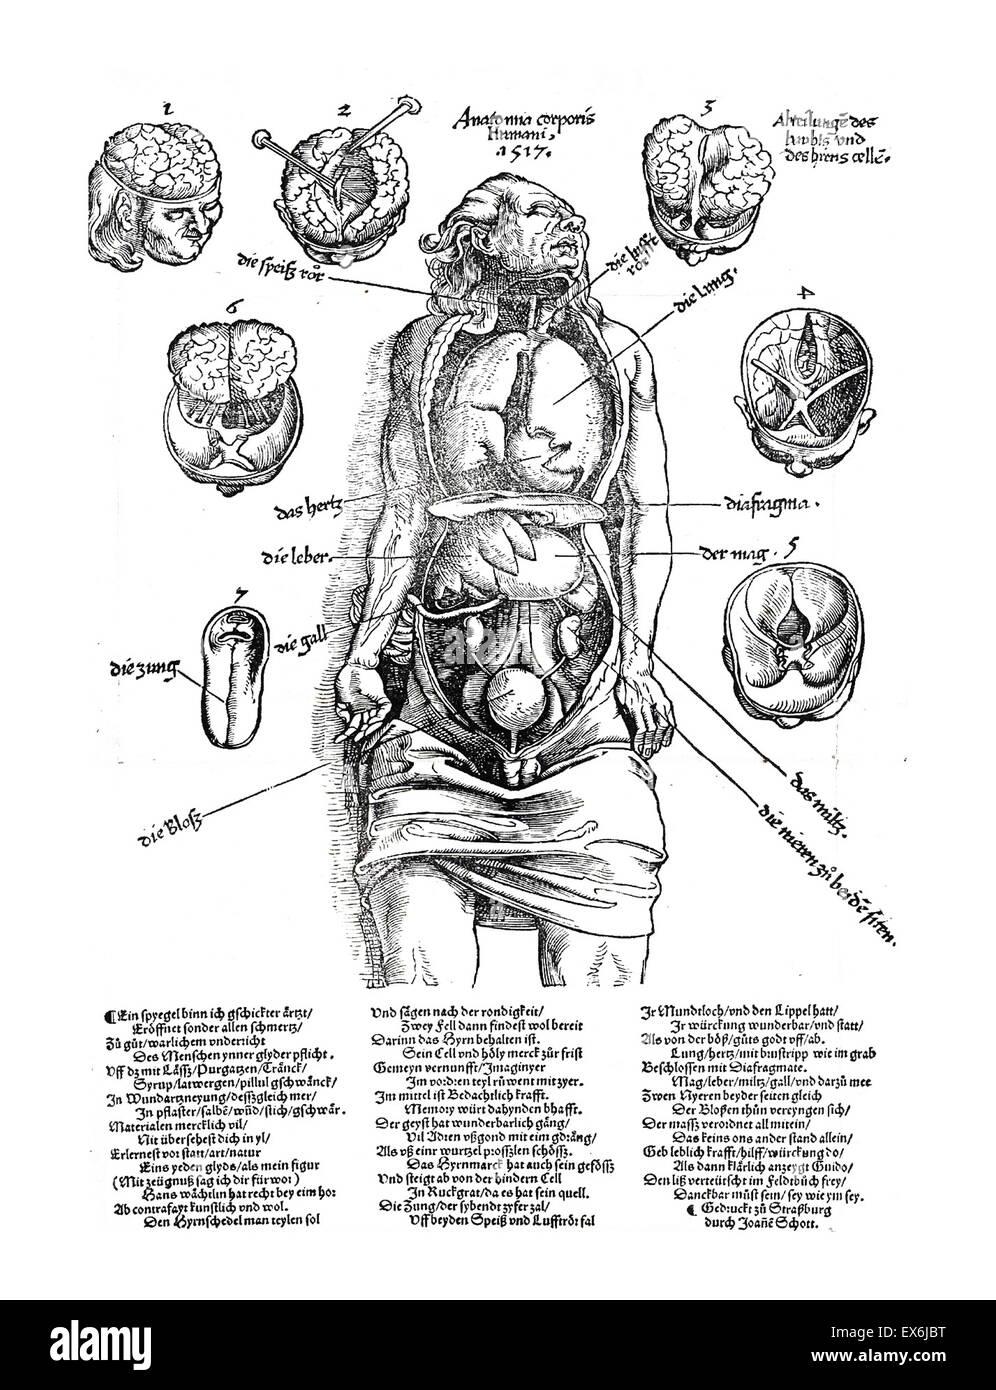 Las ilustraciones anatómicas de 'Feldbuch der Wundarzney (campo libro de cirugía", 1517. El libro fue escrito por Hans von Gersdorff, (1455 - 1529), un cirujano alemán. Foto de stock